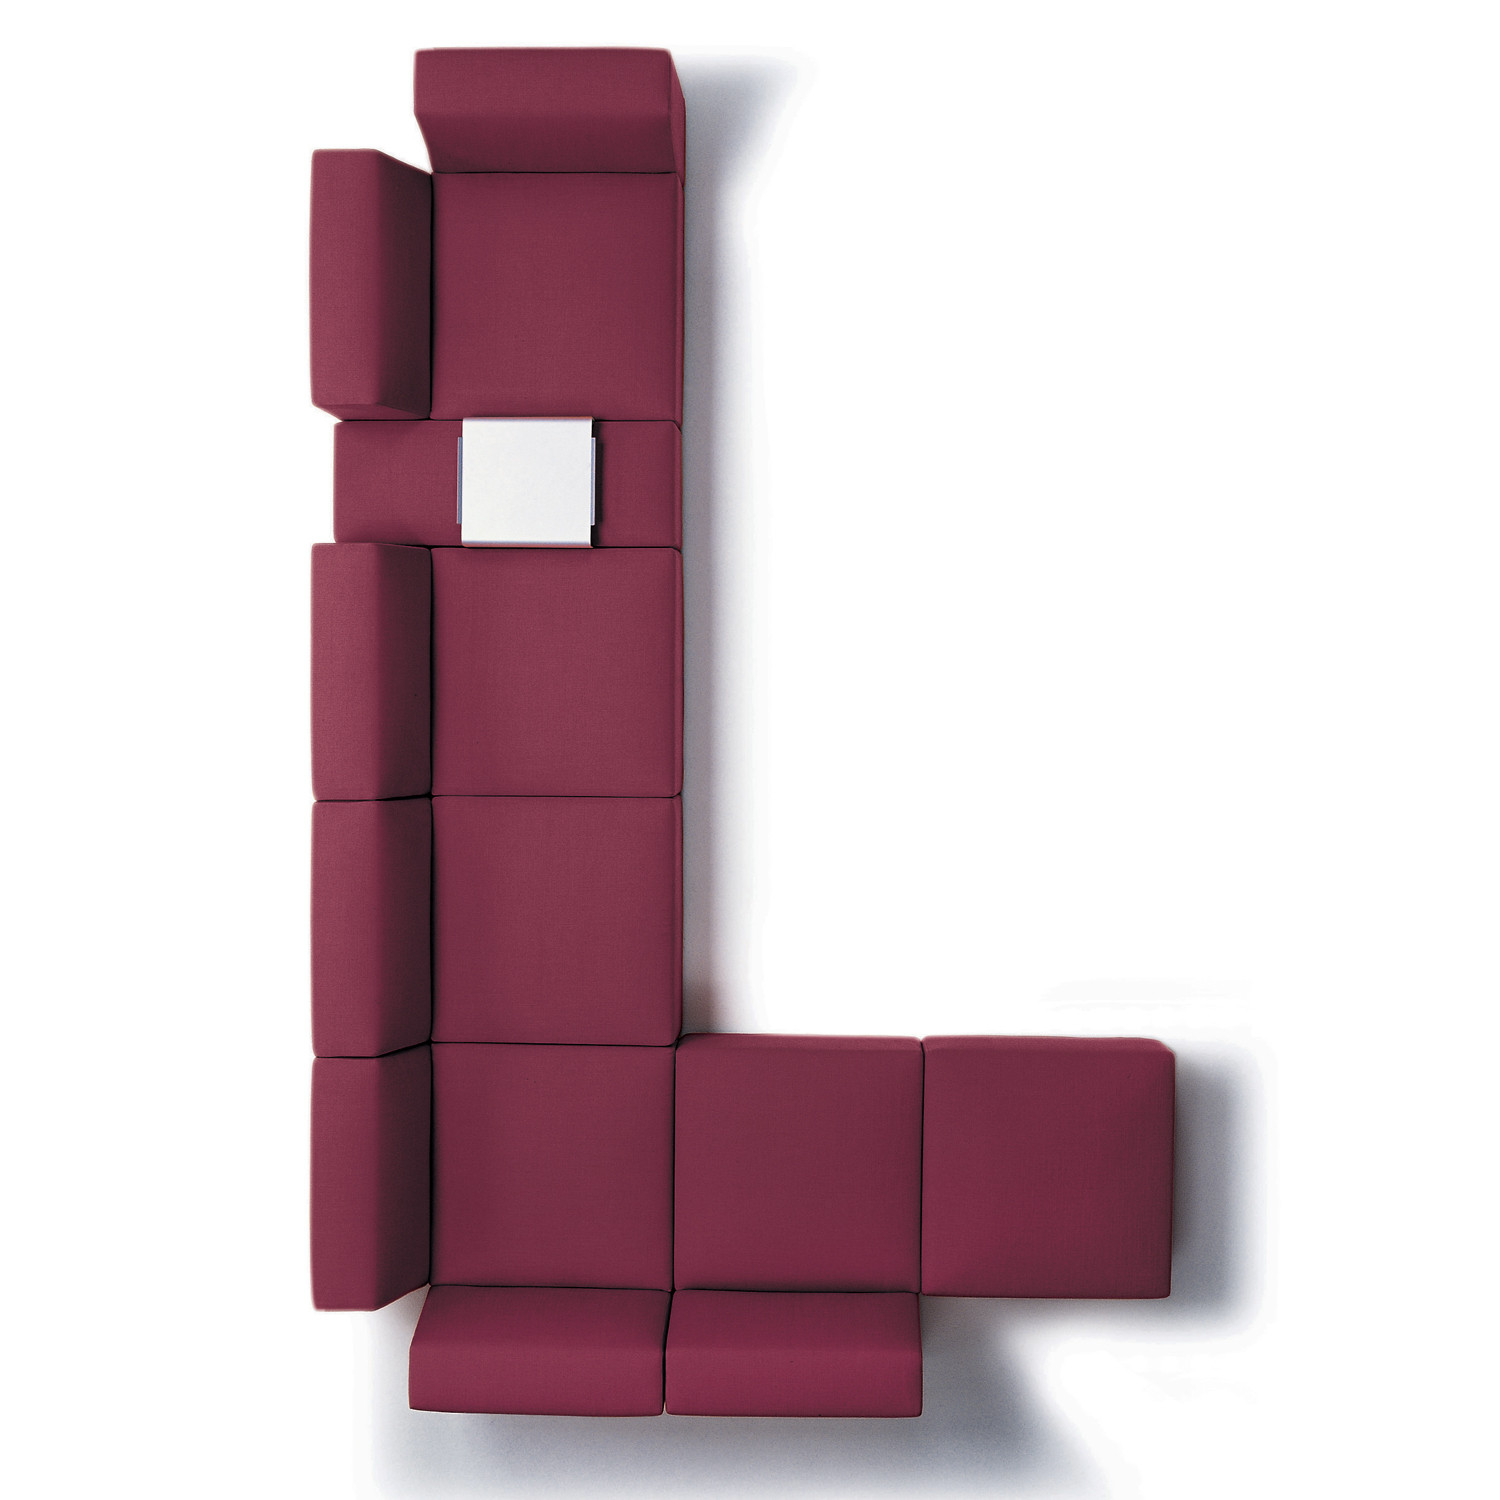 Quadro Modular Sofa by Tacchini